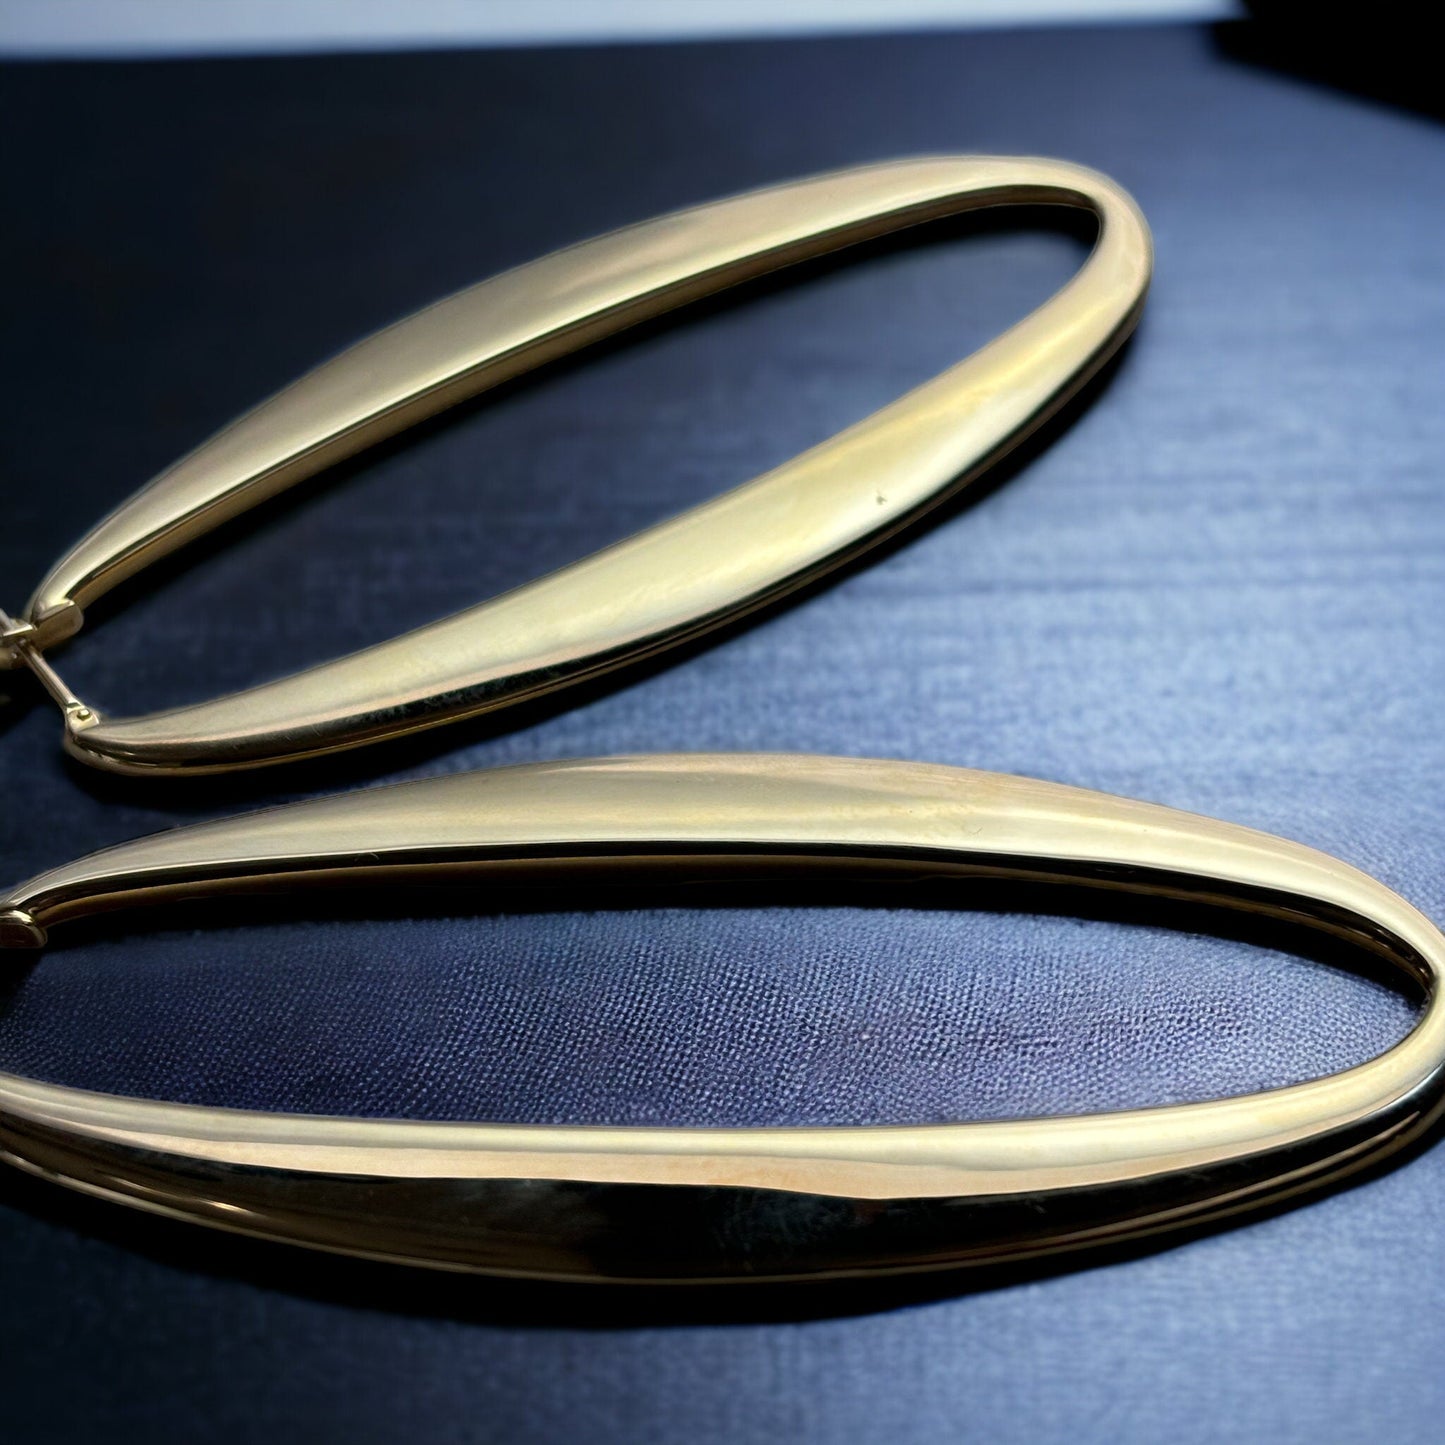 18k Solid Long shaped Oval Dainty Gold Hoop Earrings - R. Mouzannar Jewelry